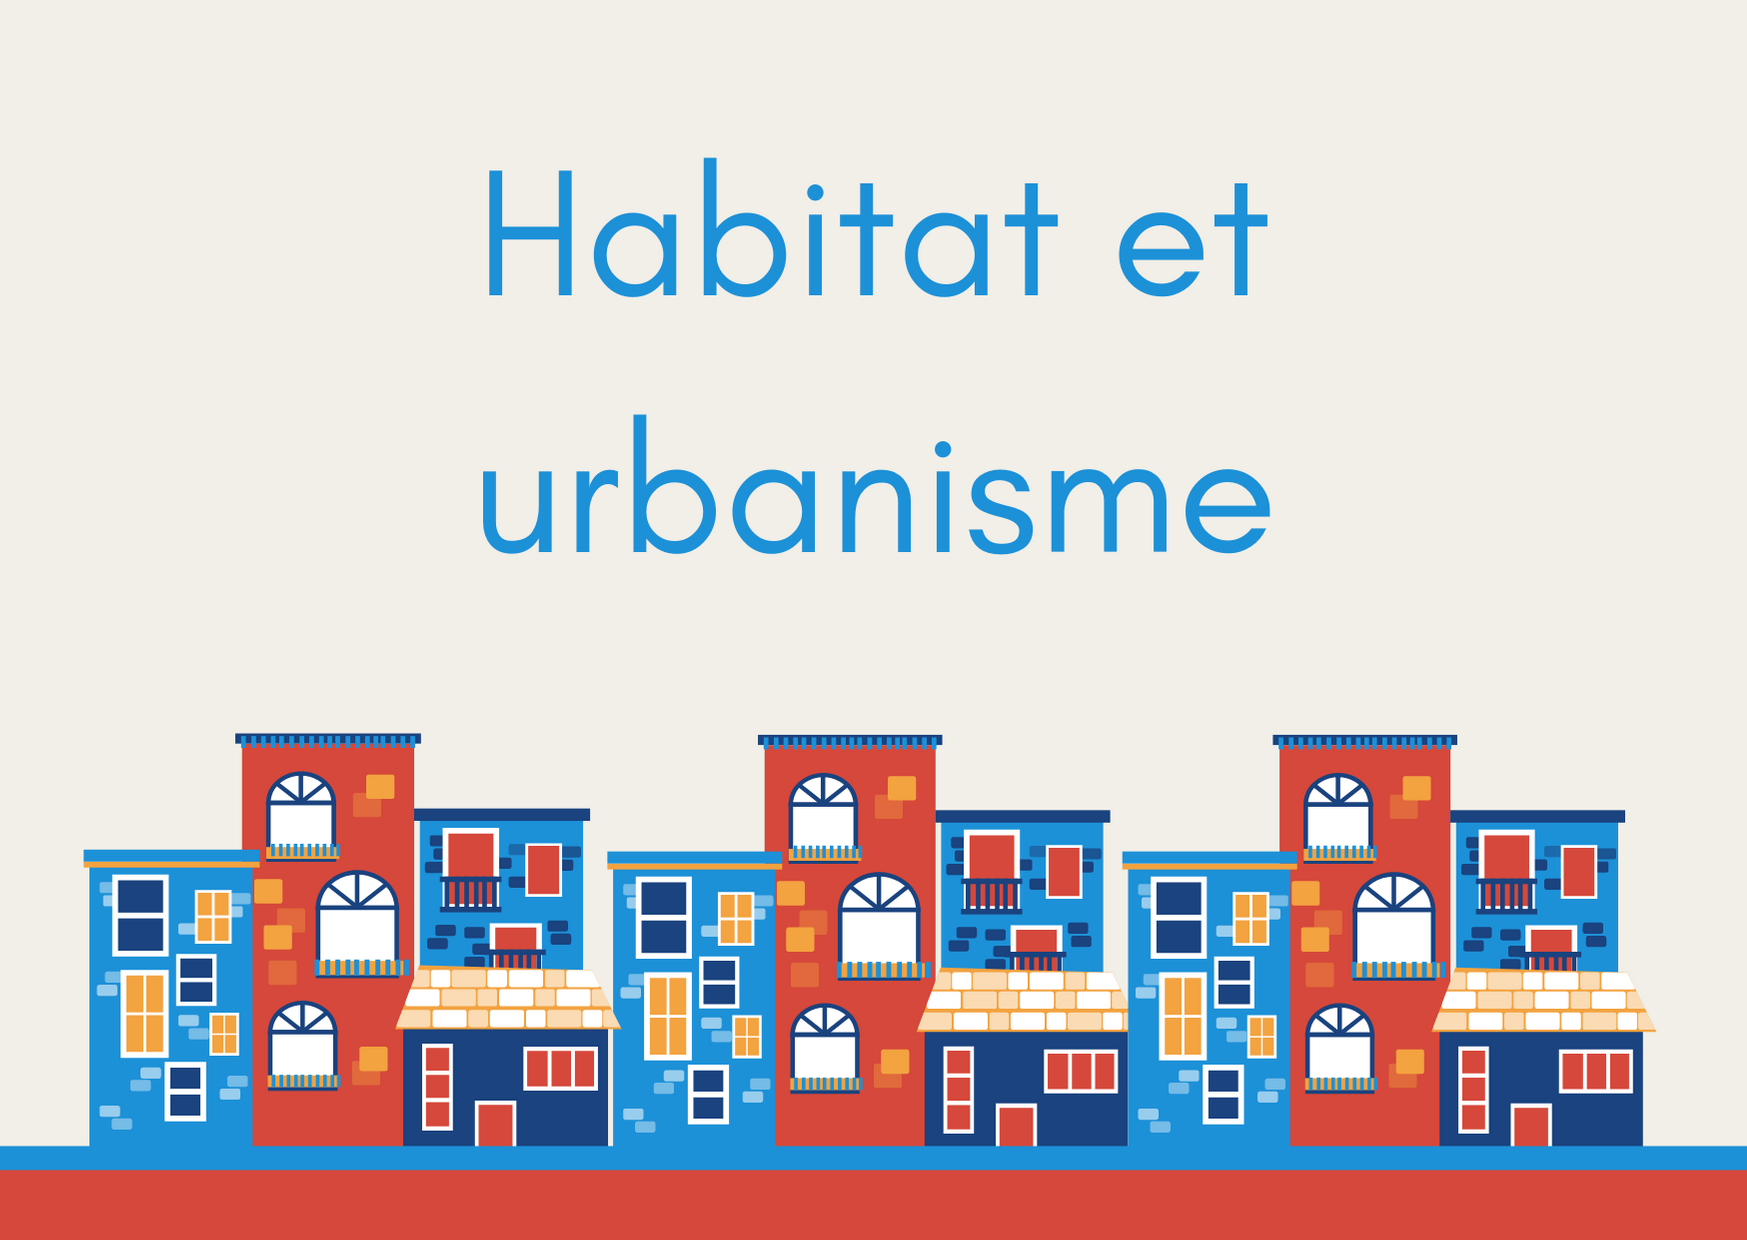 Habitat et urbanisme.png